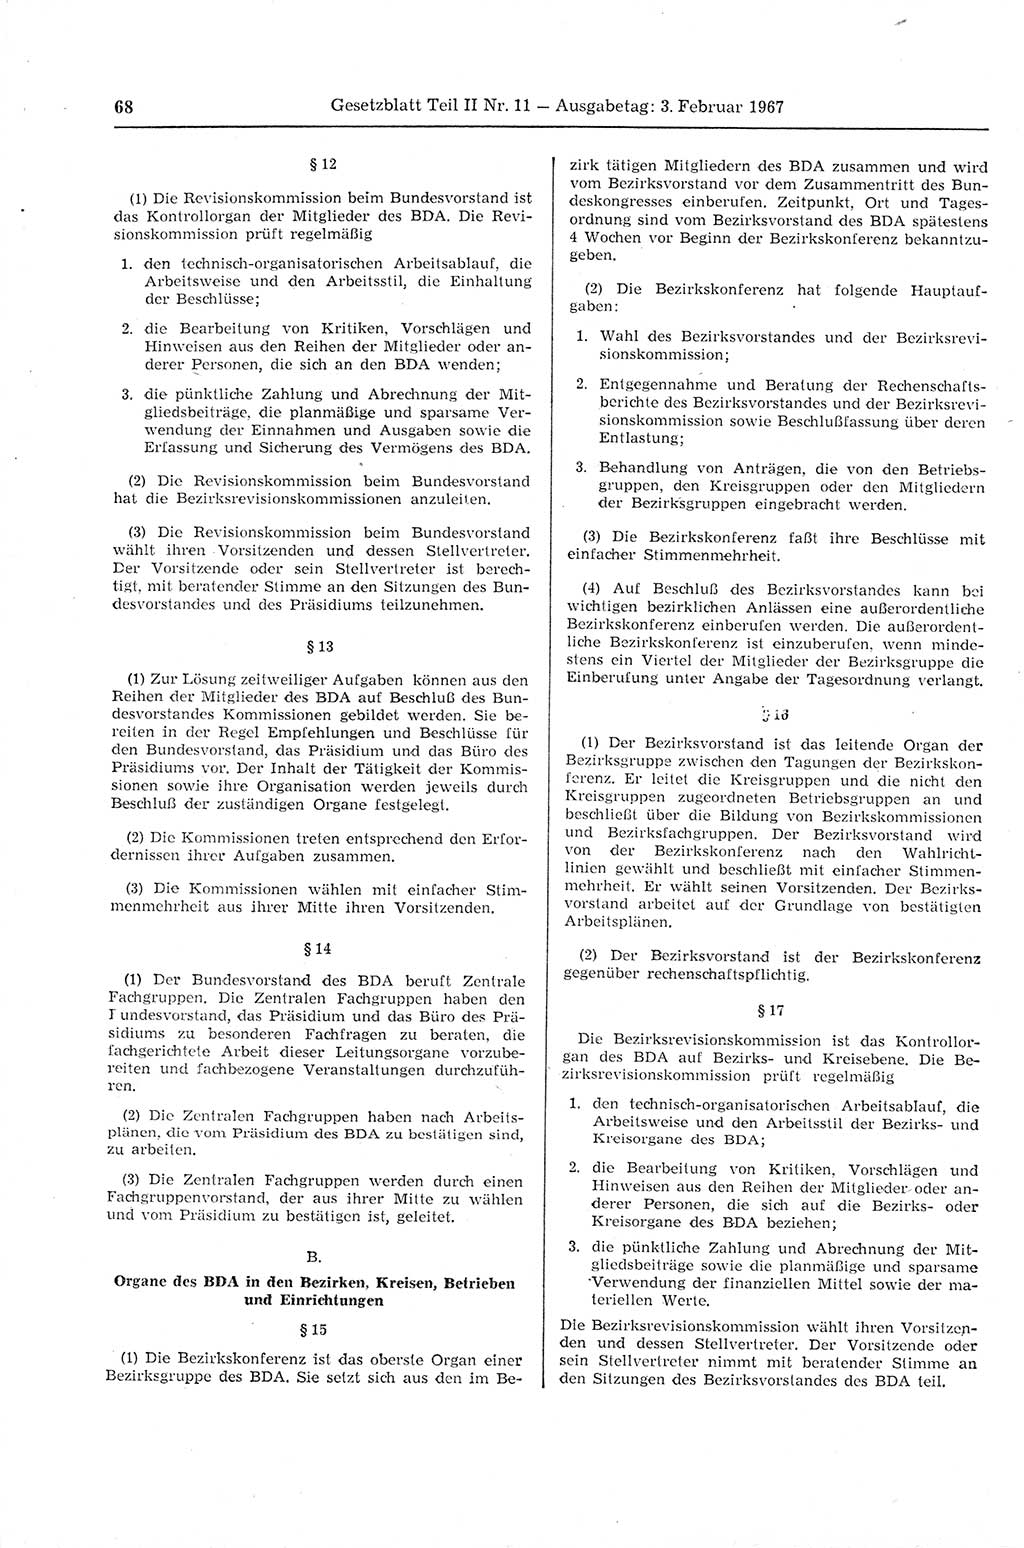 Gesetzblatt (GBl.) der Deutschen Demokratischen Republik (DDR) Teil ⅠⅠ 1967, Seite 68 (GBl. DDR ⅠⅠ 1967, S. 68)